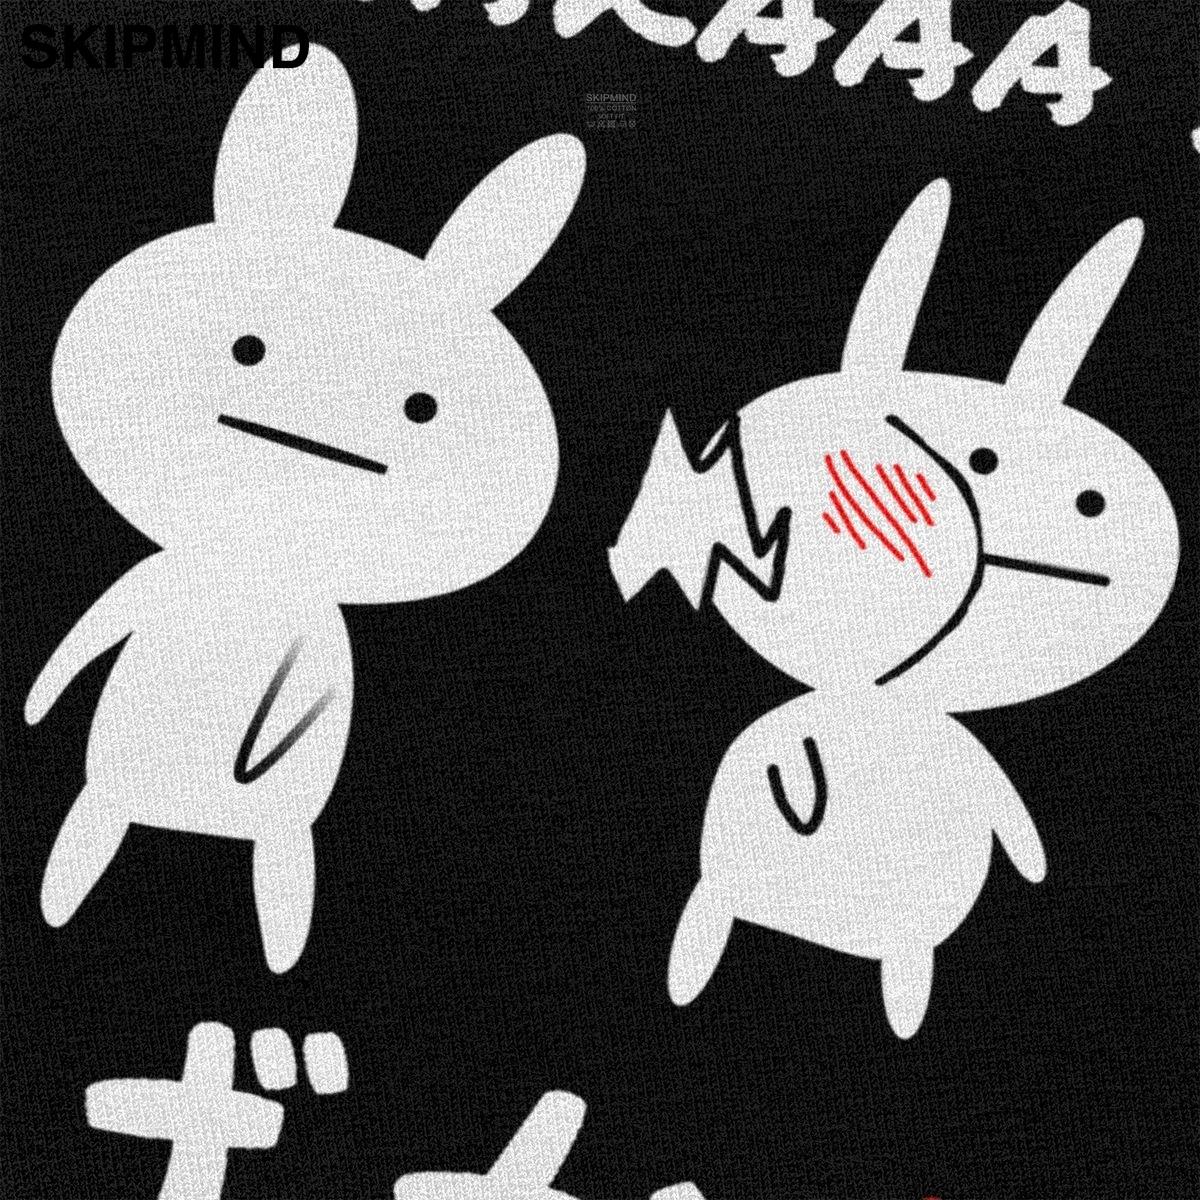 Изображение товара: Классическая мужская футболка Baka с изображением кролика Slap, забавная японская аниме футболка с коротким рукавом, футболки из чистого хлопка для фанатов Merch Gift